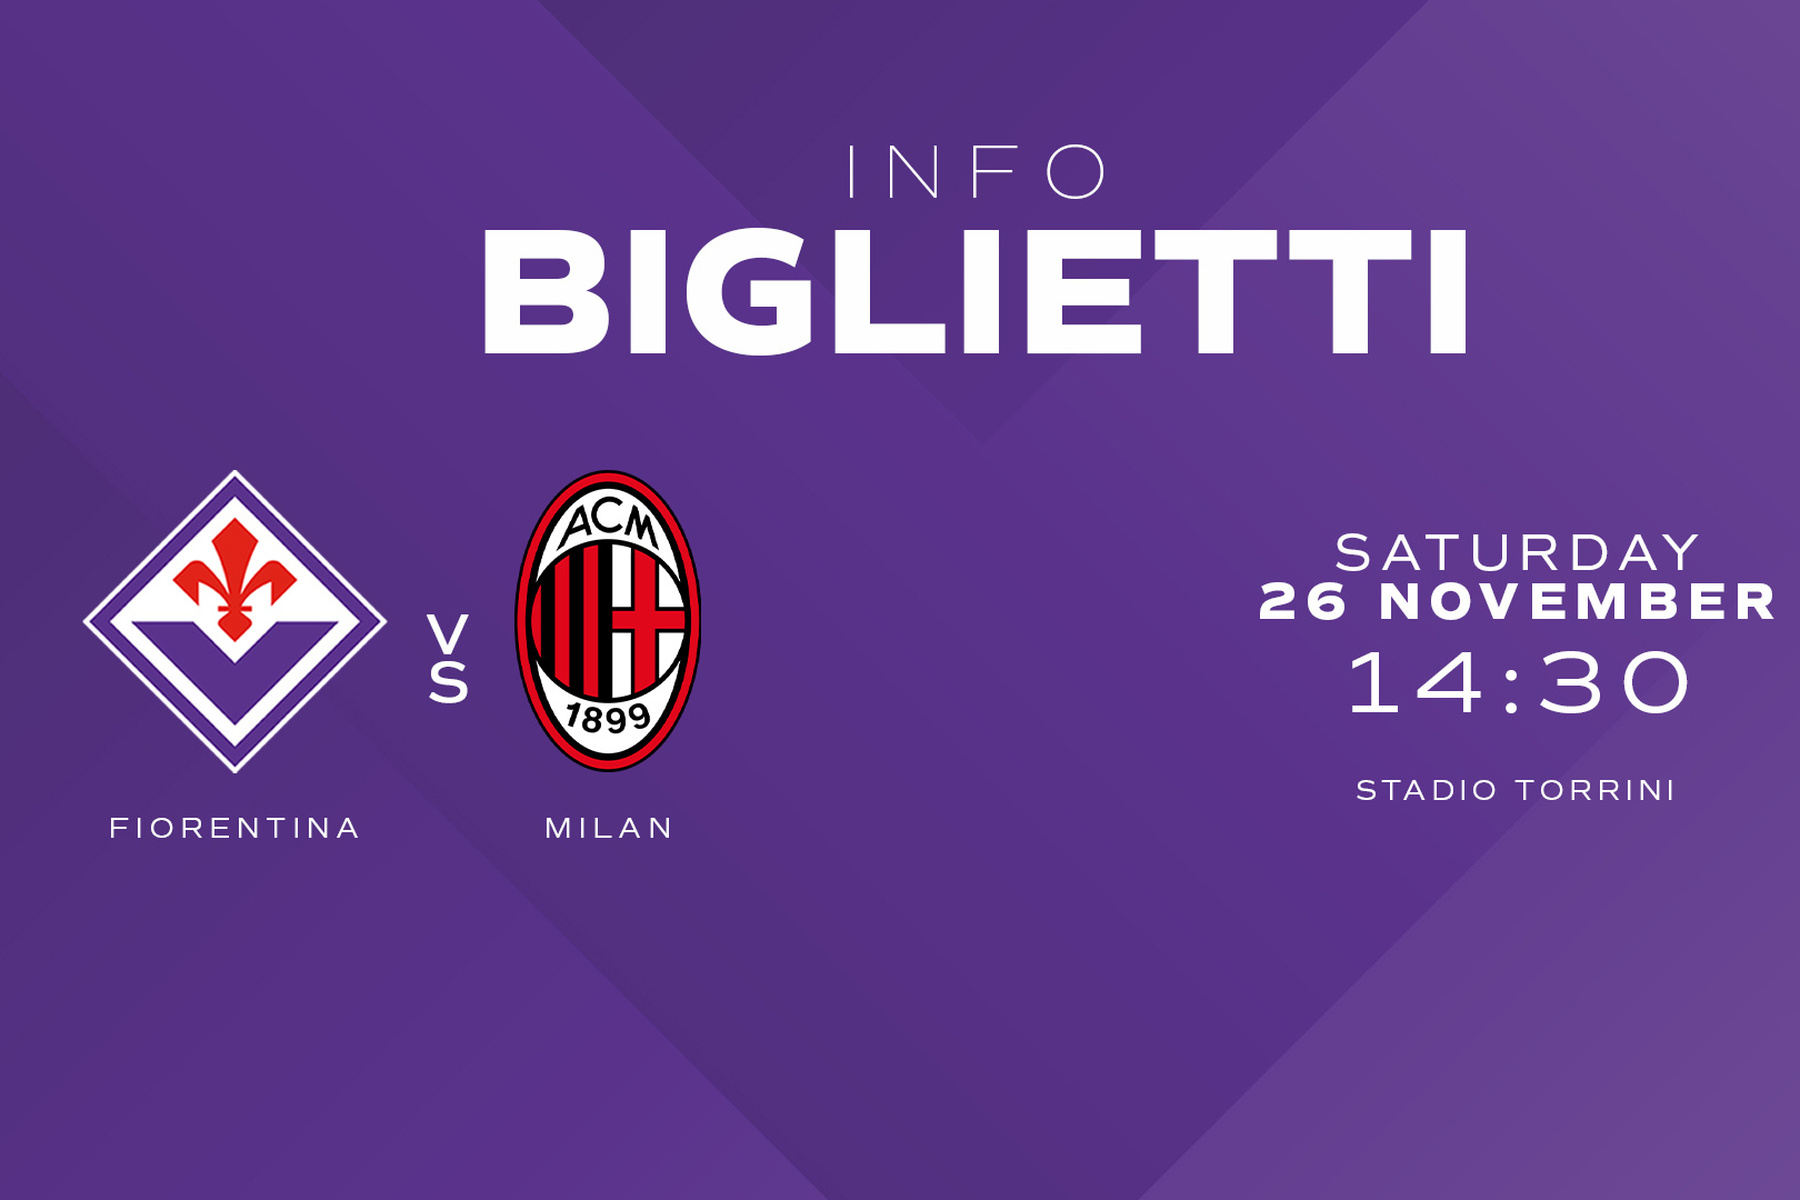 AC Milan vs ACF Fiorentina - Serie A Femminile 